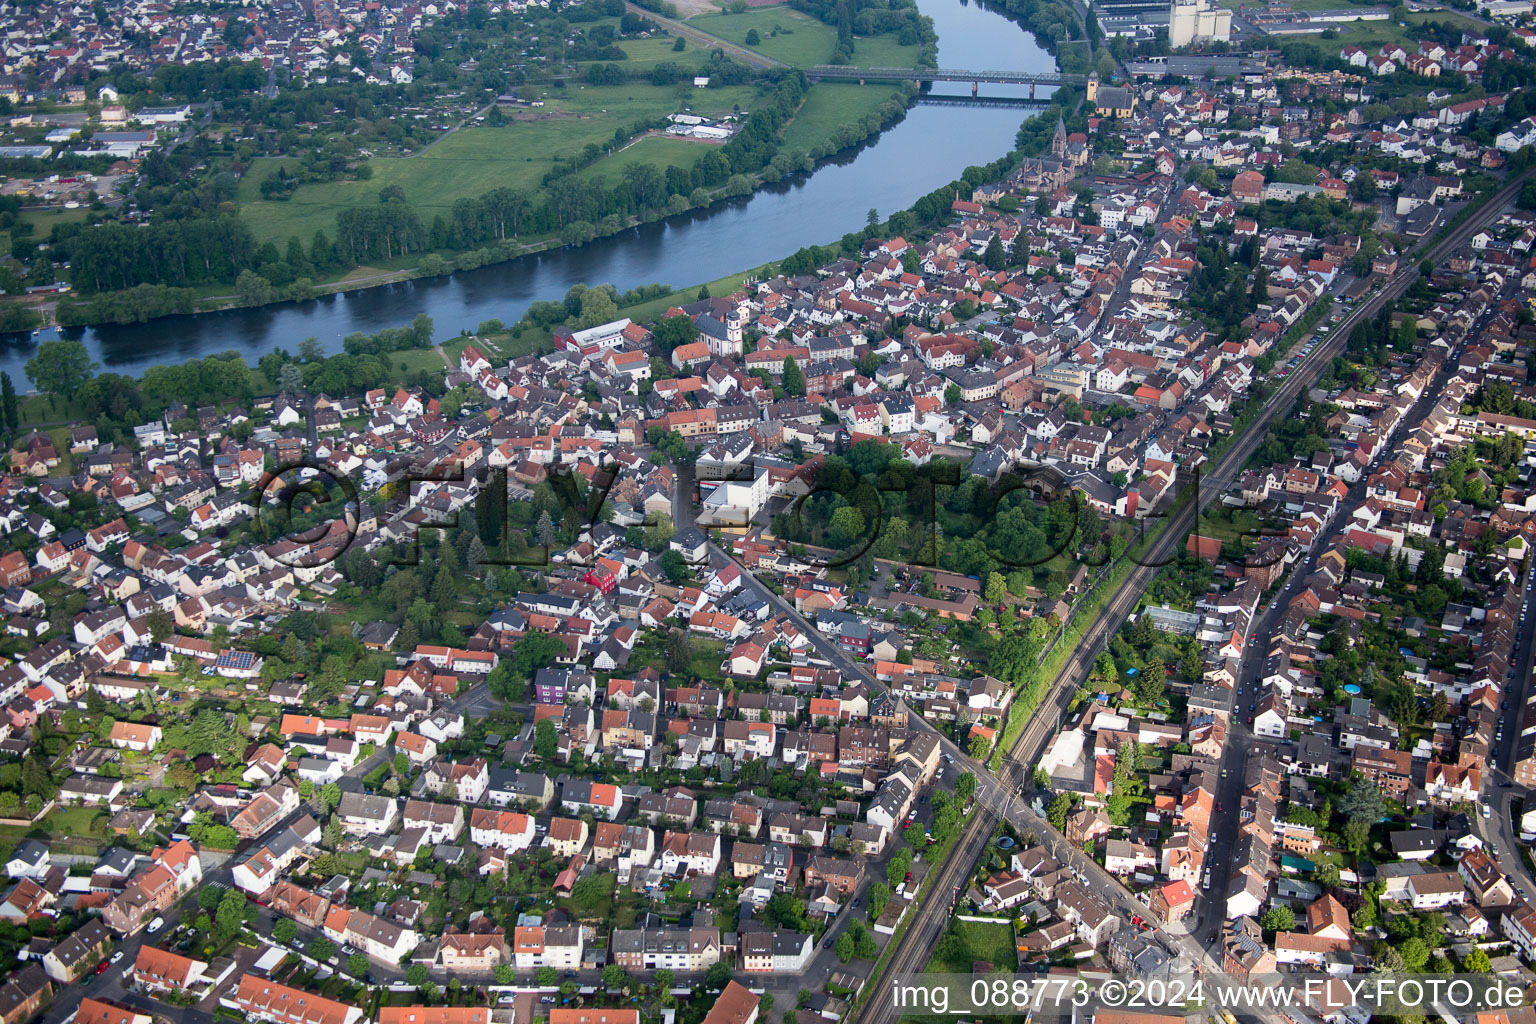 Ortskern am Uferbereich des Main - Flußverlaufes in Großauheim im Bundesland Hessen, Deutschland